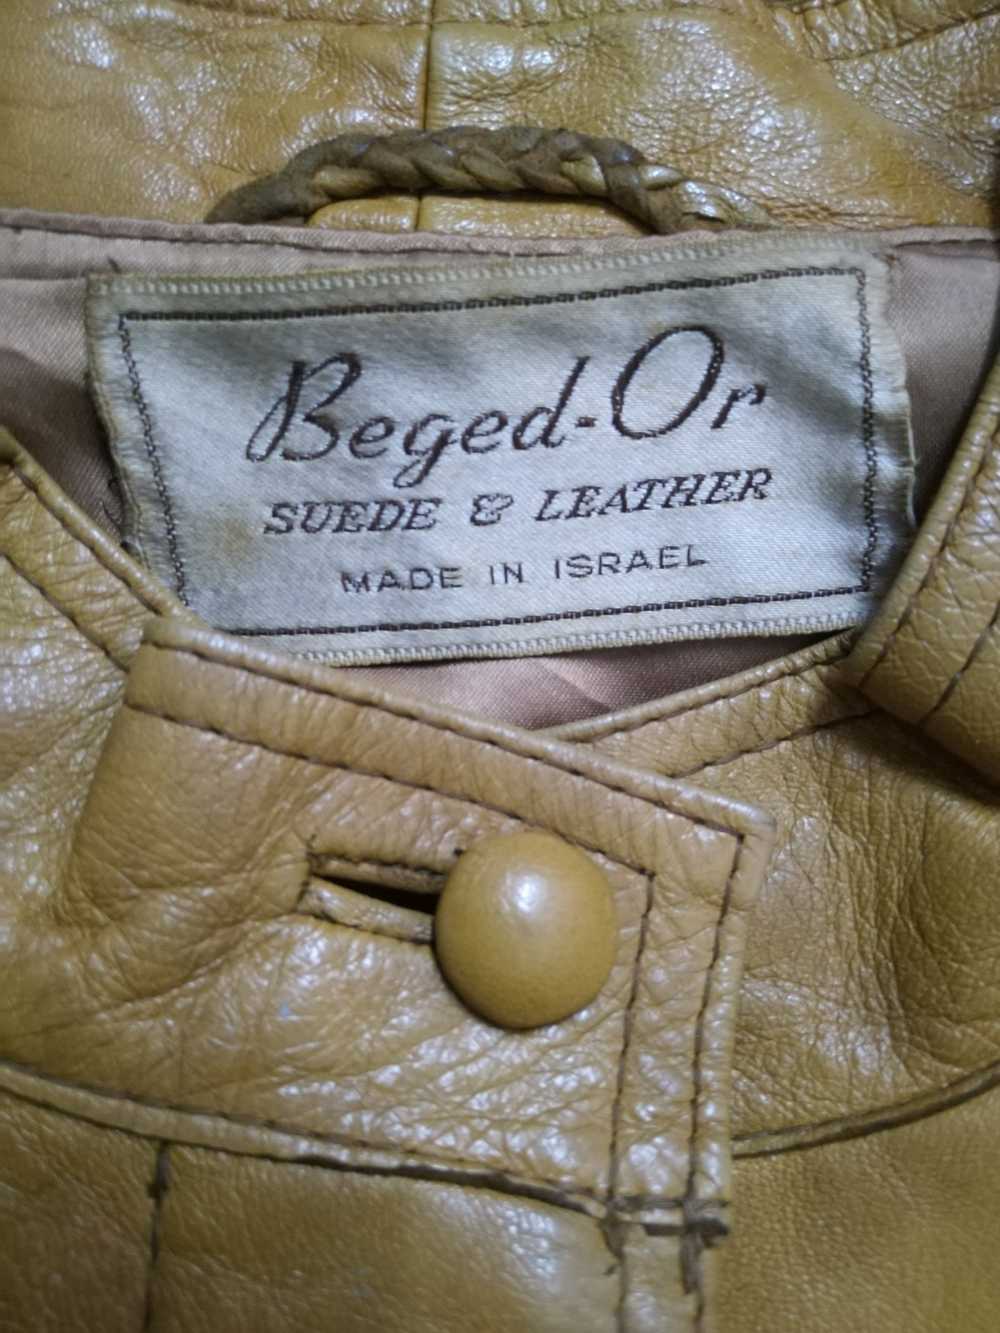 Vintage Vintage Beged - Or Suede & Leather - image 6